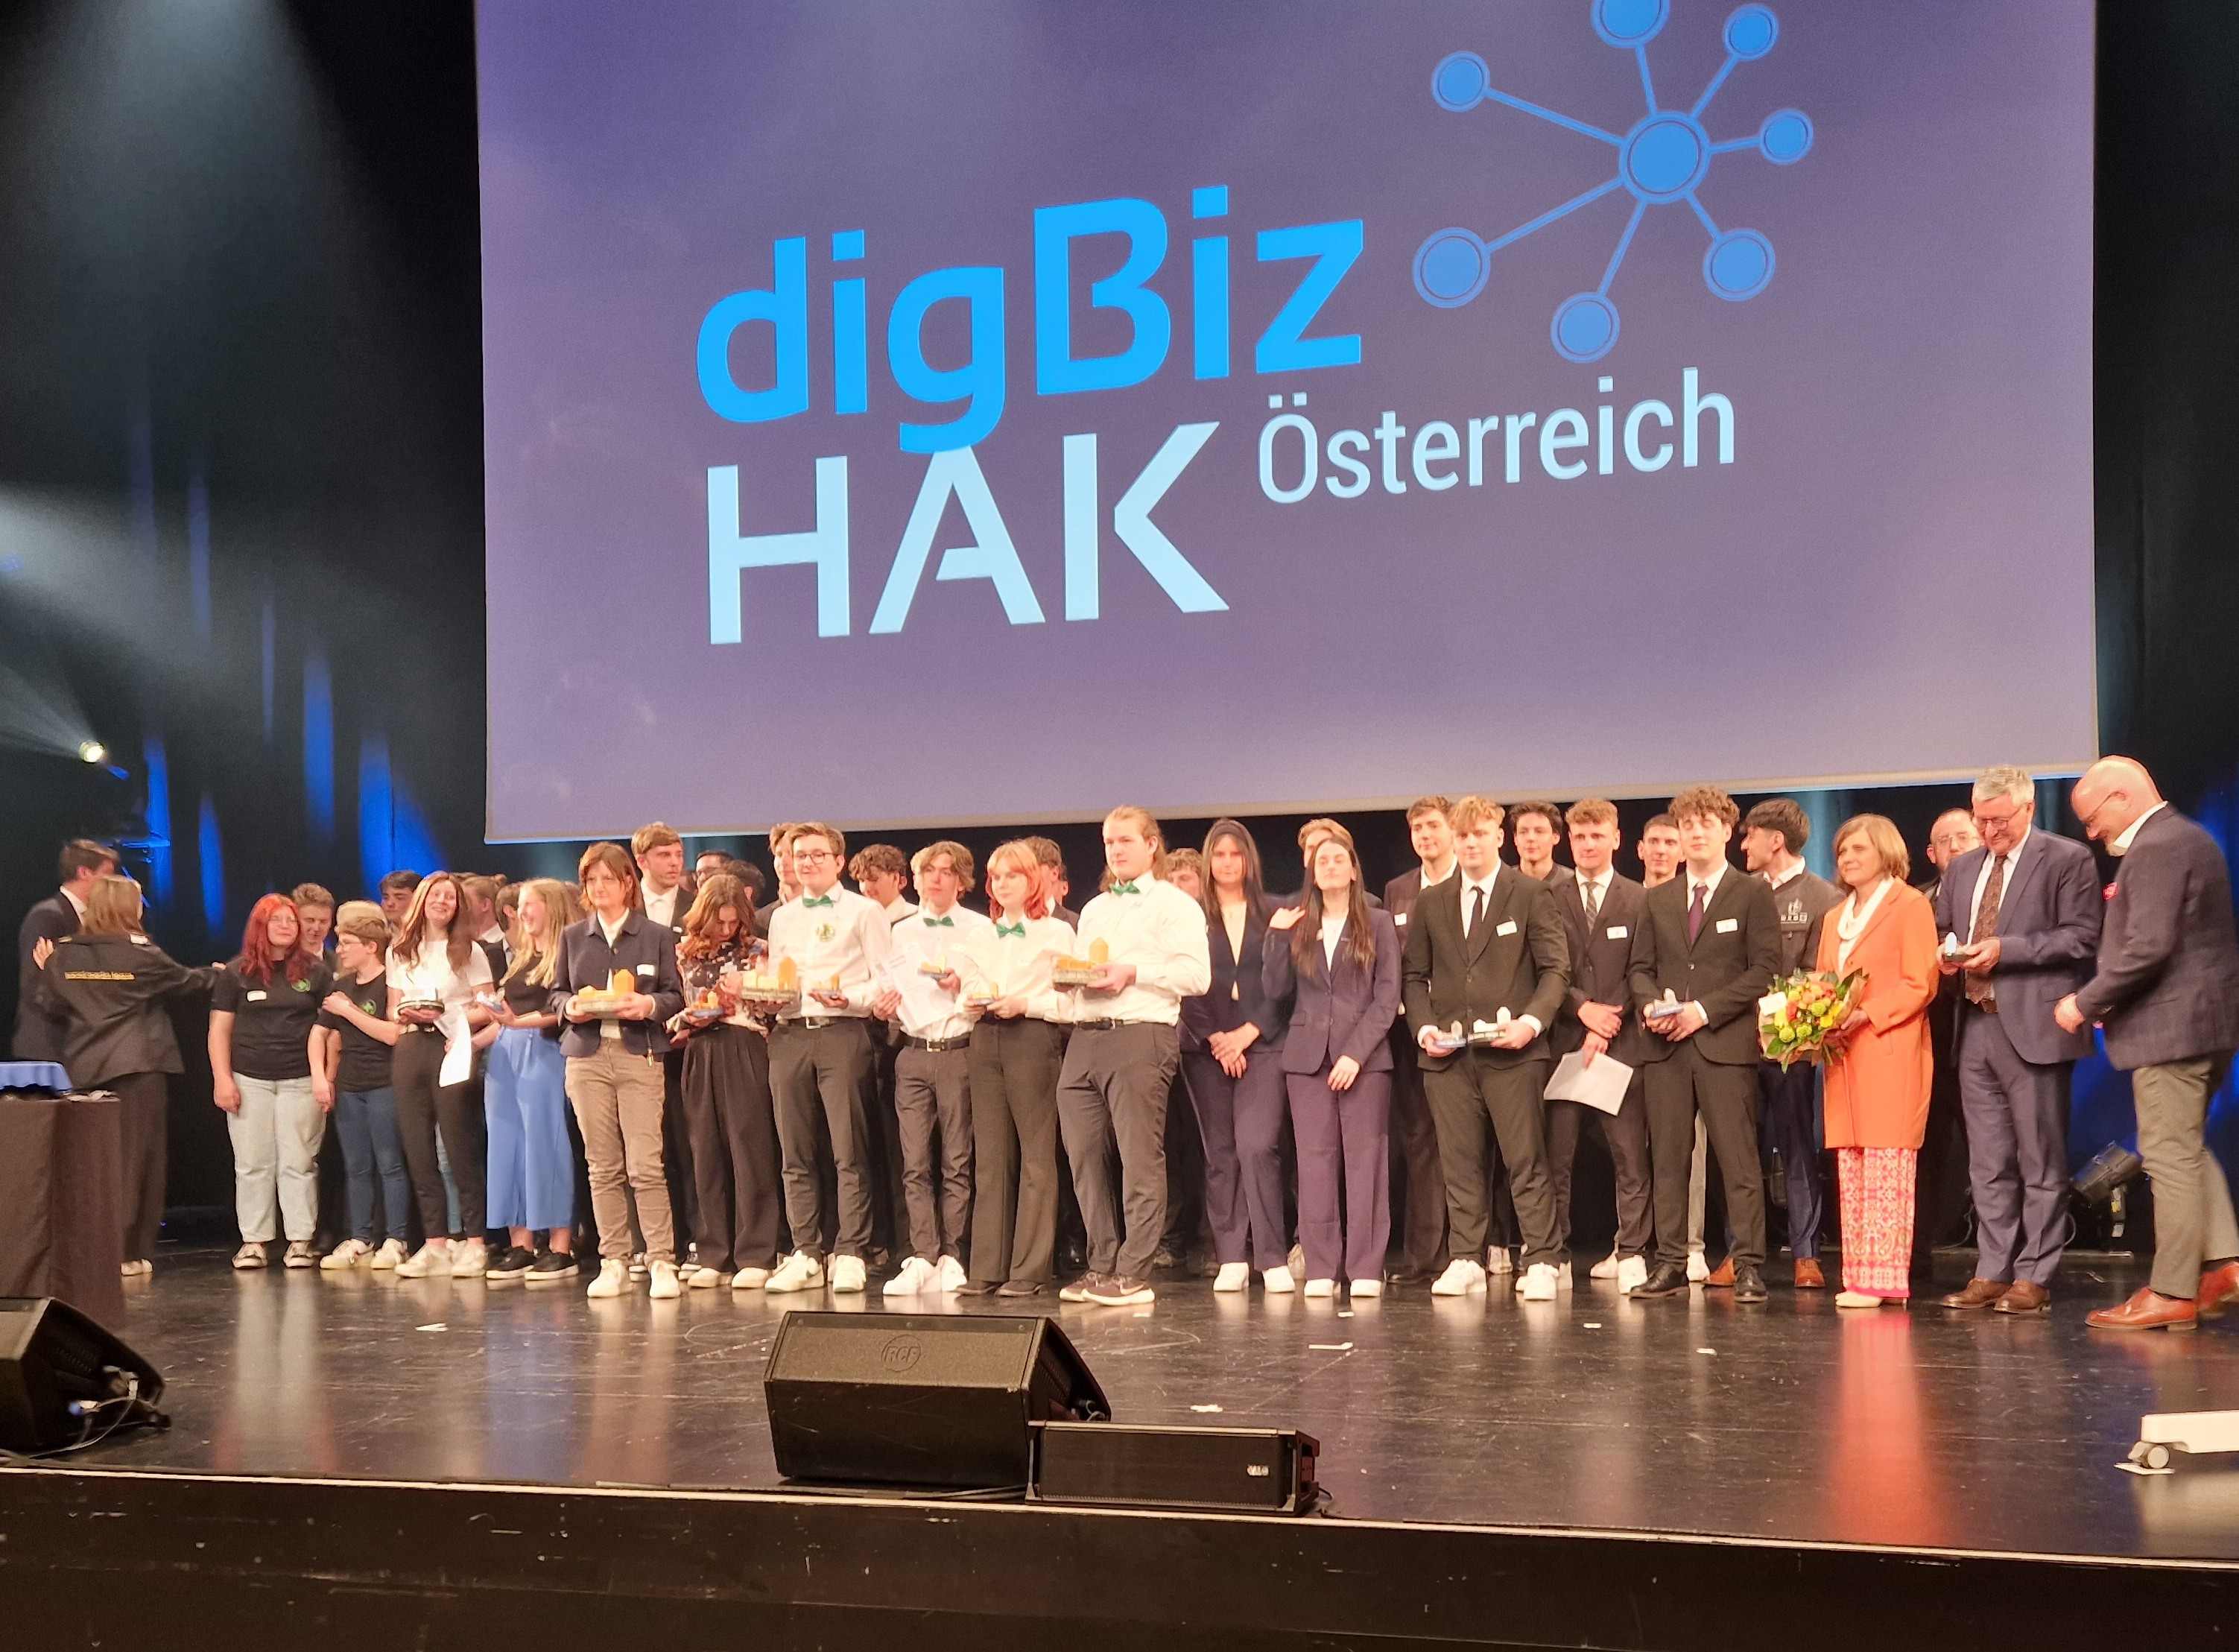 Dig Biz Award - 2. Platz in der Kategorie "Bestes Design" für HAK Neumarkt--Bild-Nr. 8